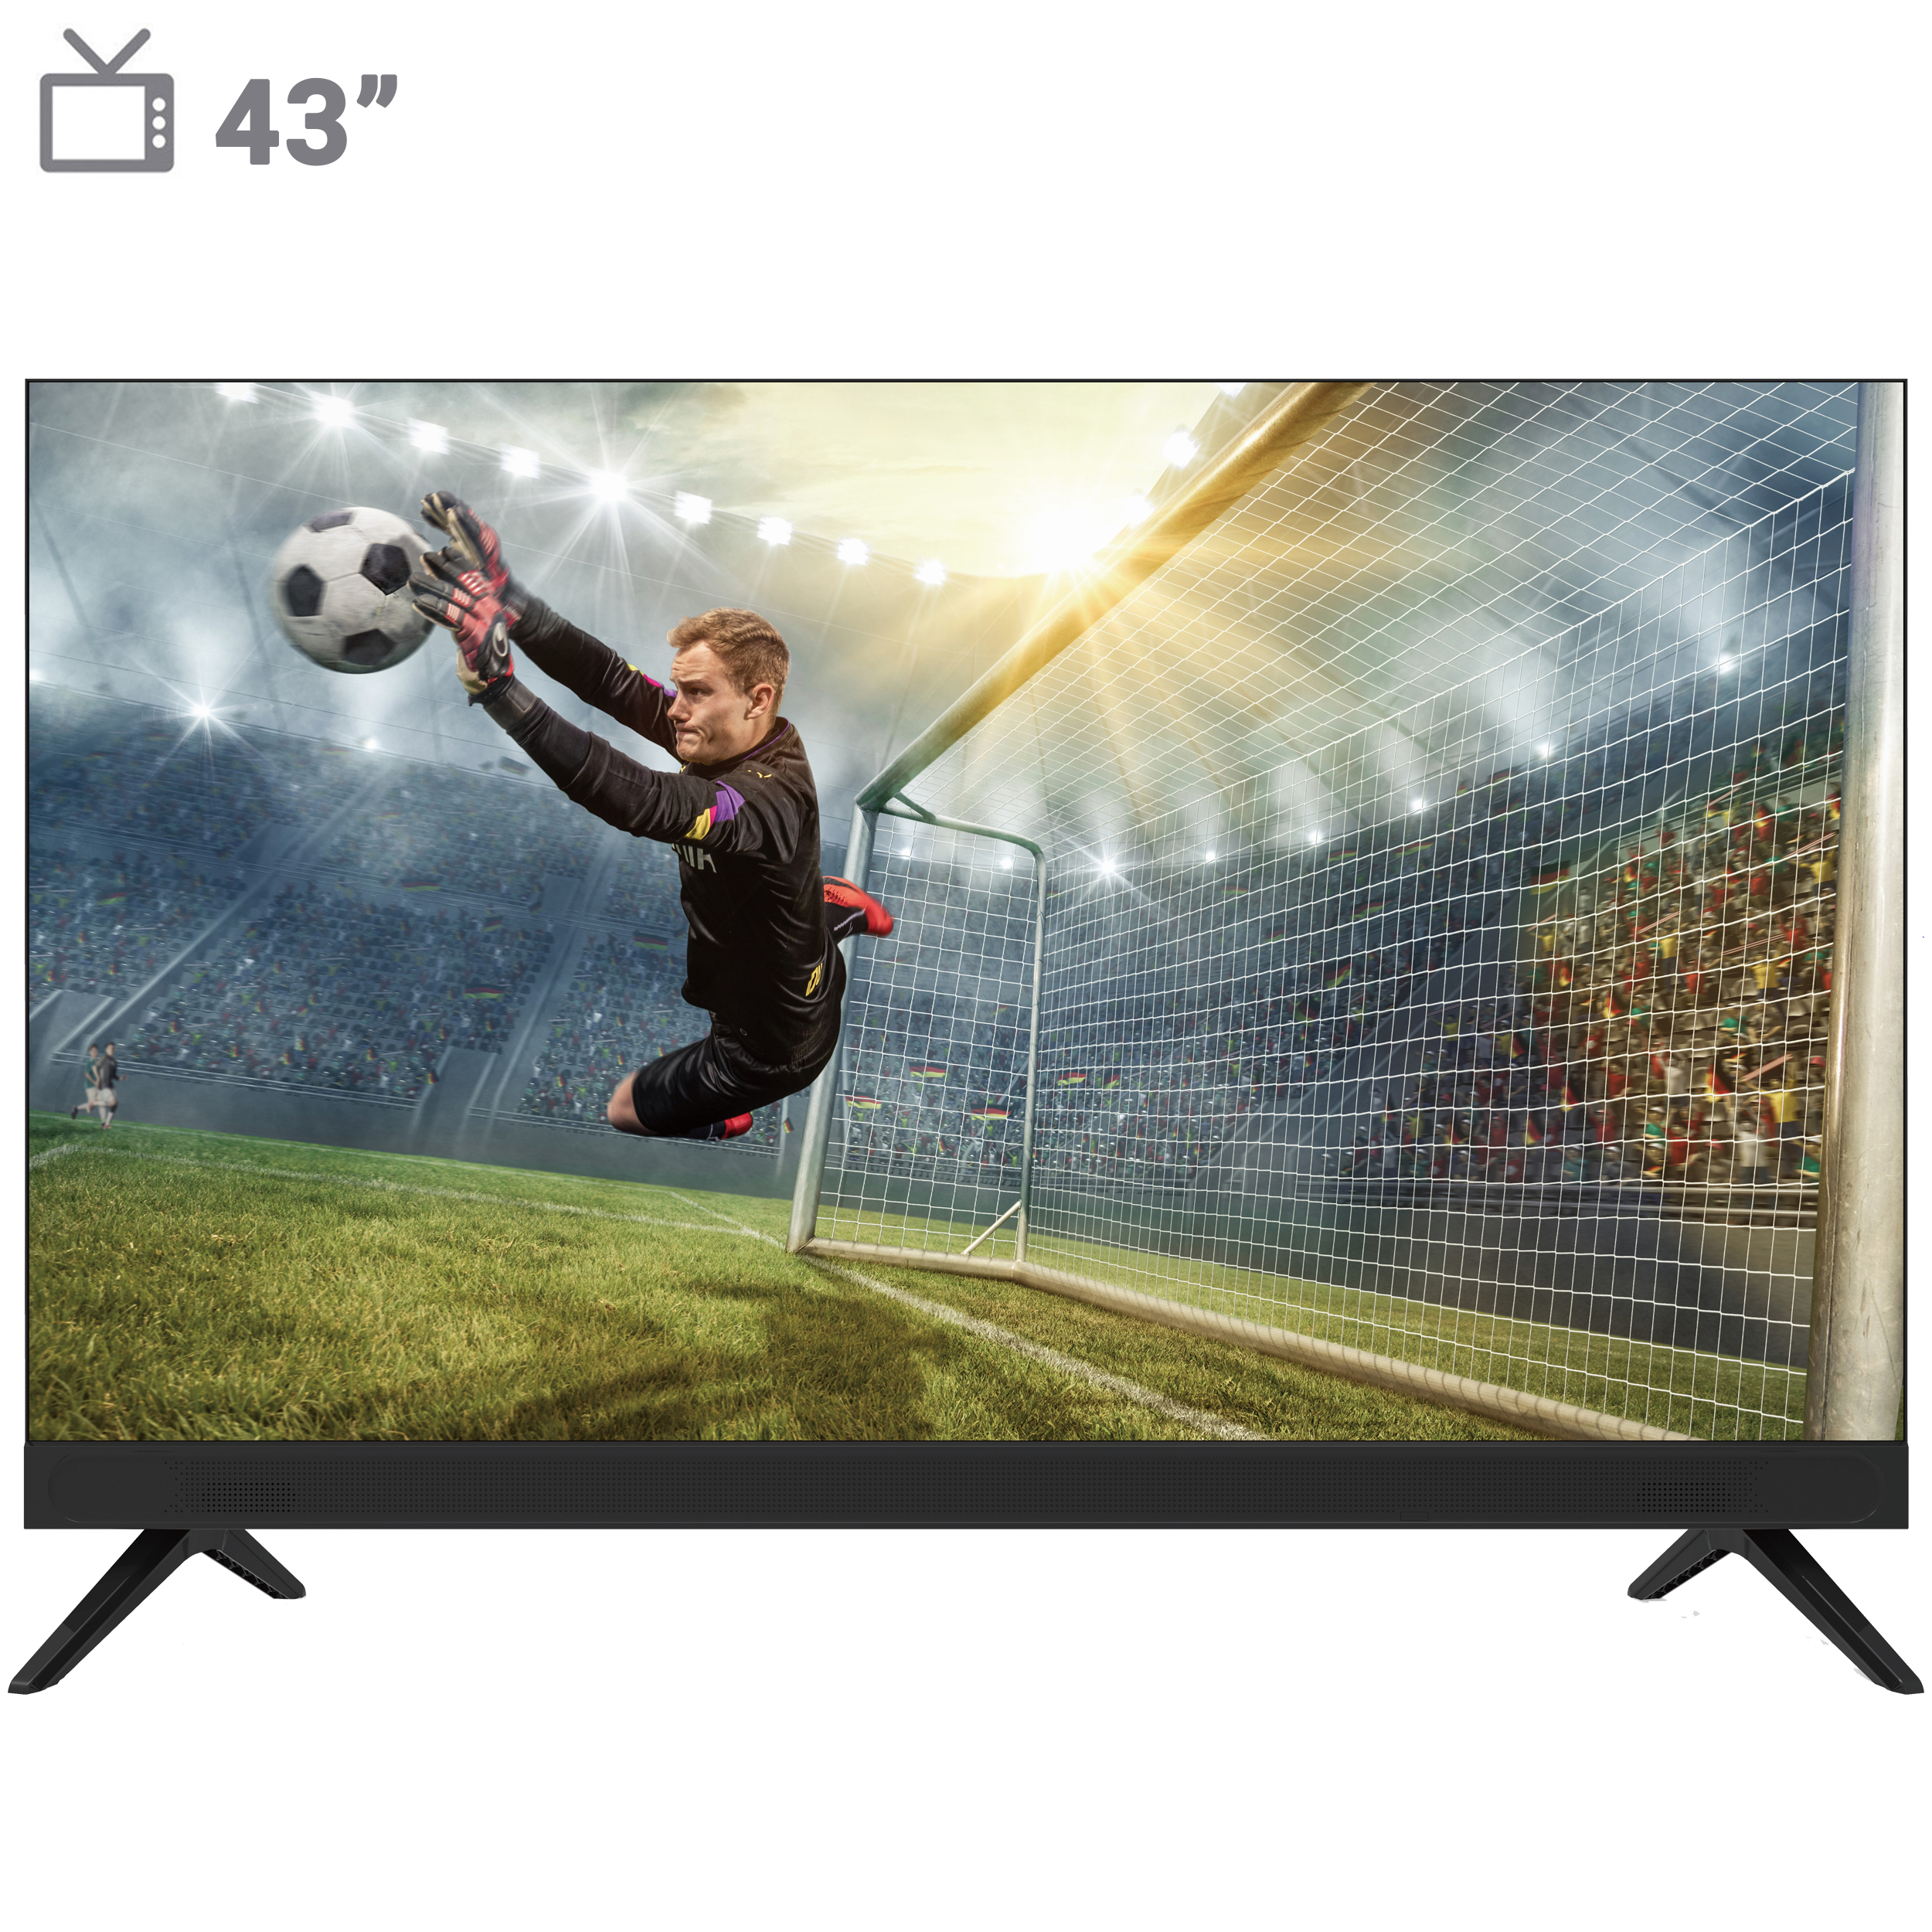 نکته خرید - قیمت روز تلویزیون ال ای دی هوشمند بویمن مدل 43KAE6800FW سایز 43 اینچ خرید